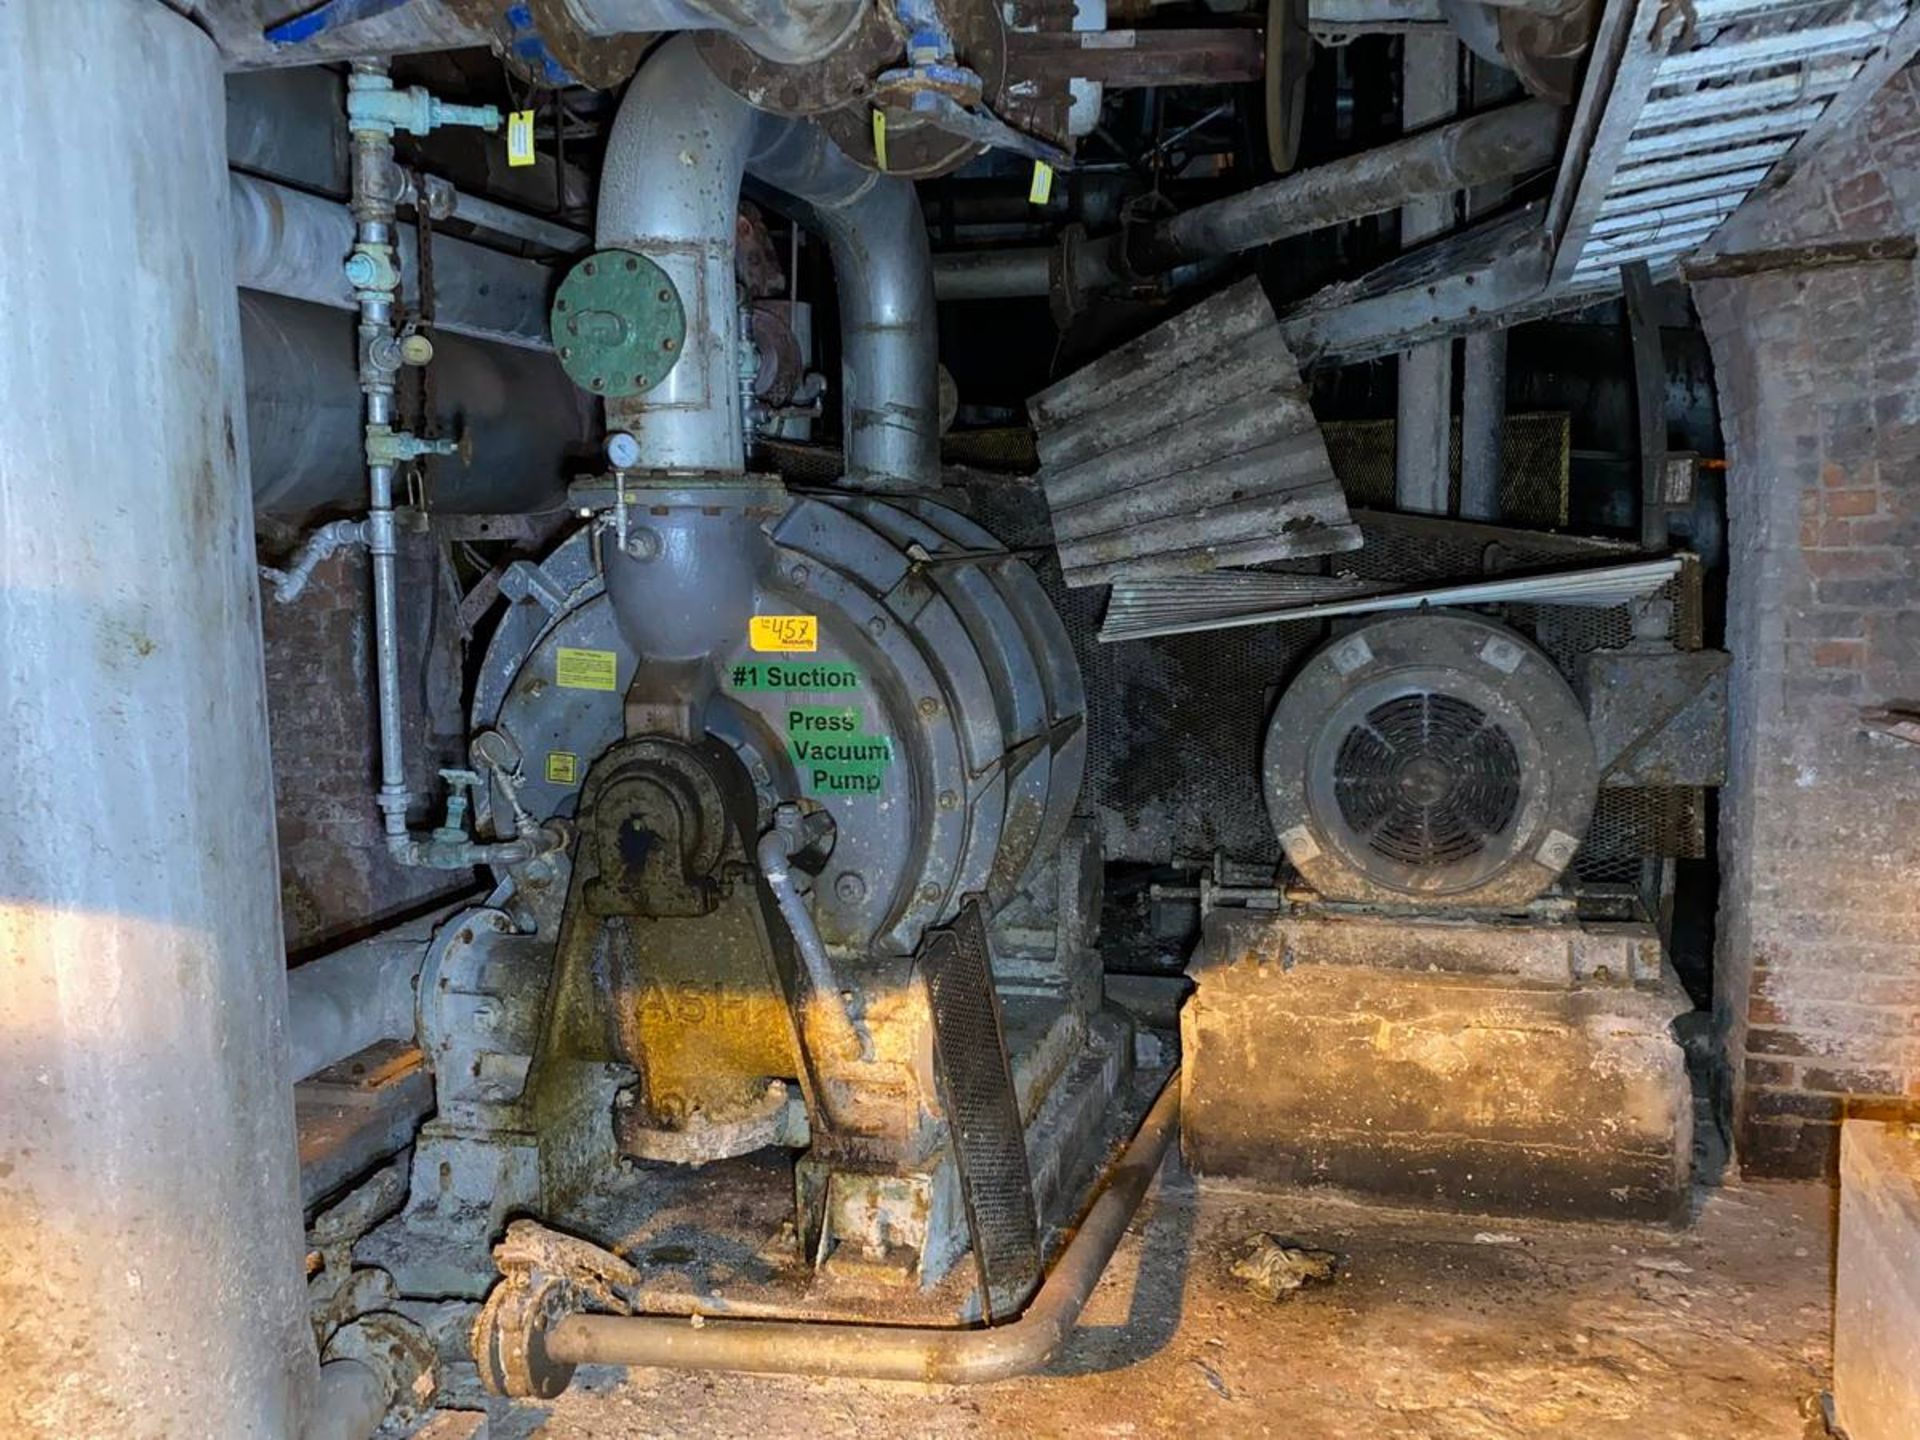 Nash CL4002 #1 Suction press vacuum pump